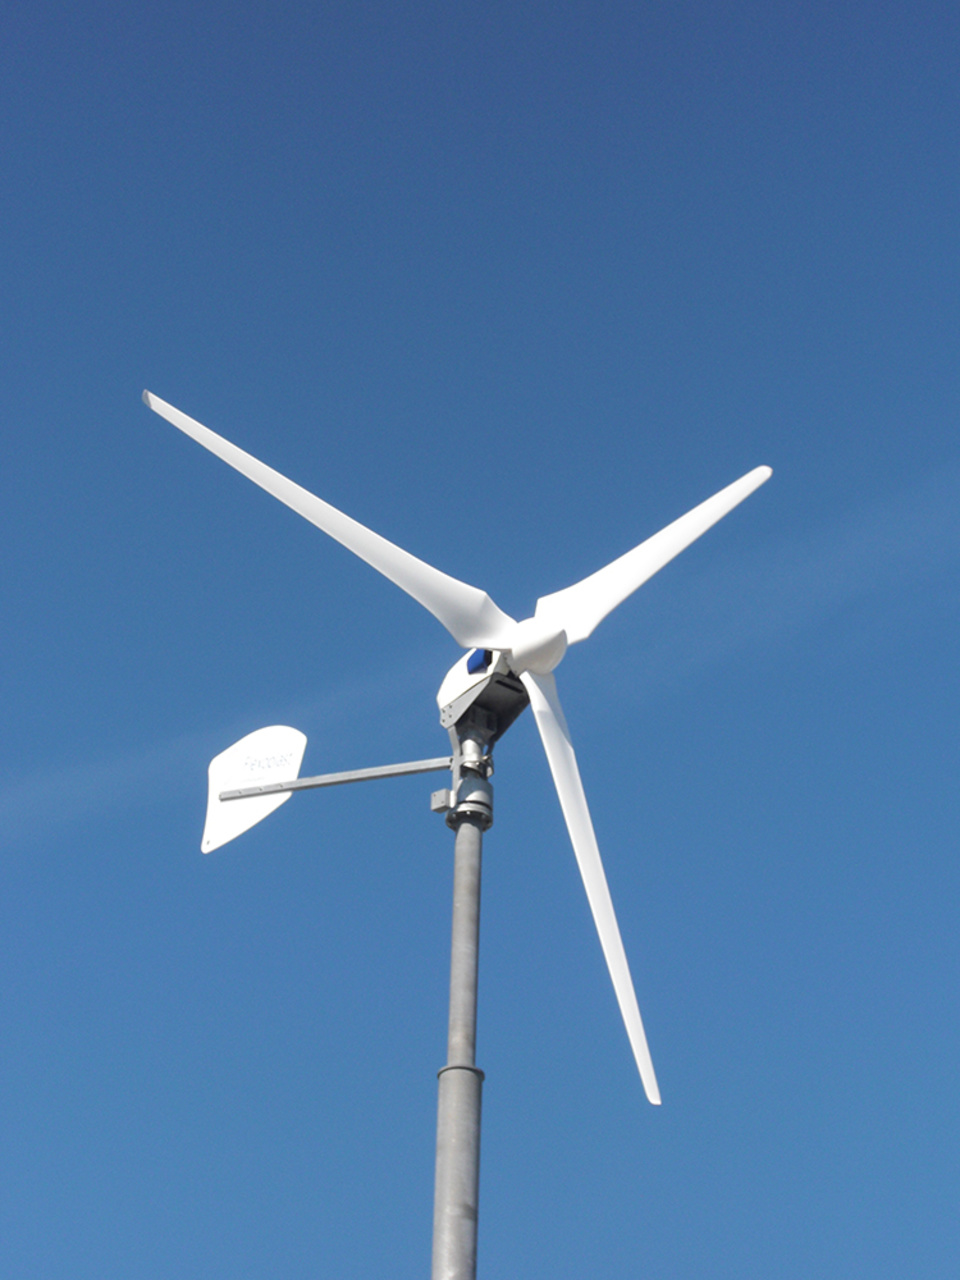 Windkraft2 bei K + S Elektroservice GmbH in Potsdam